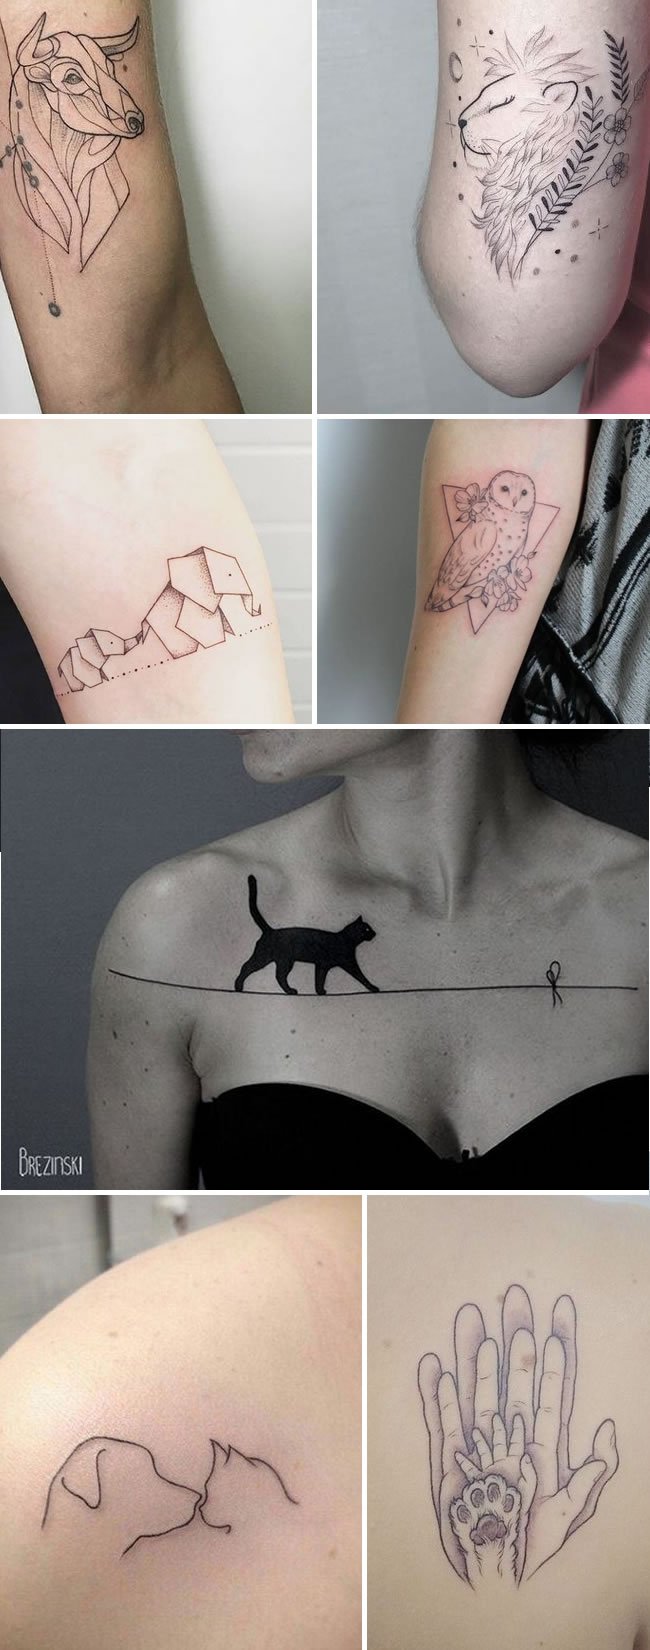 Tatuagens traços finos de animais e pets.